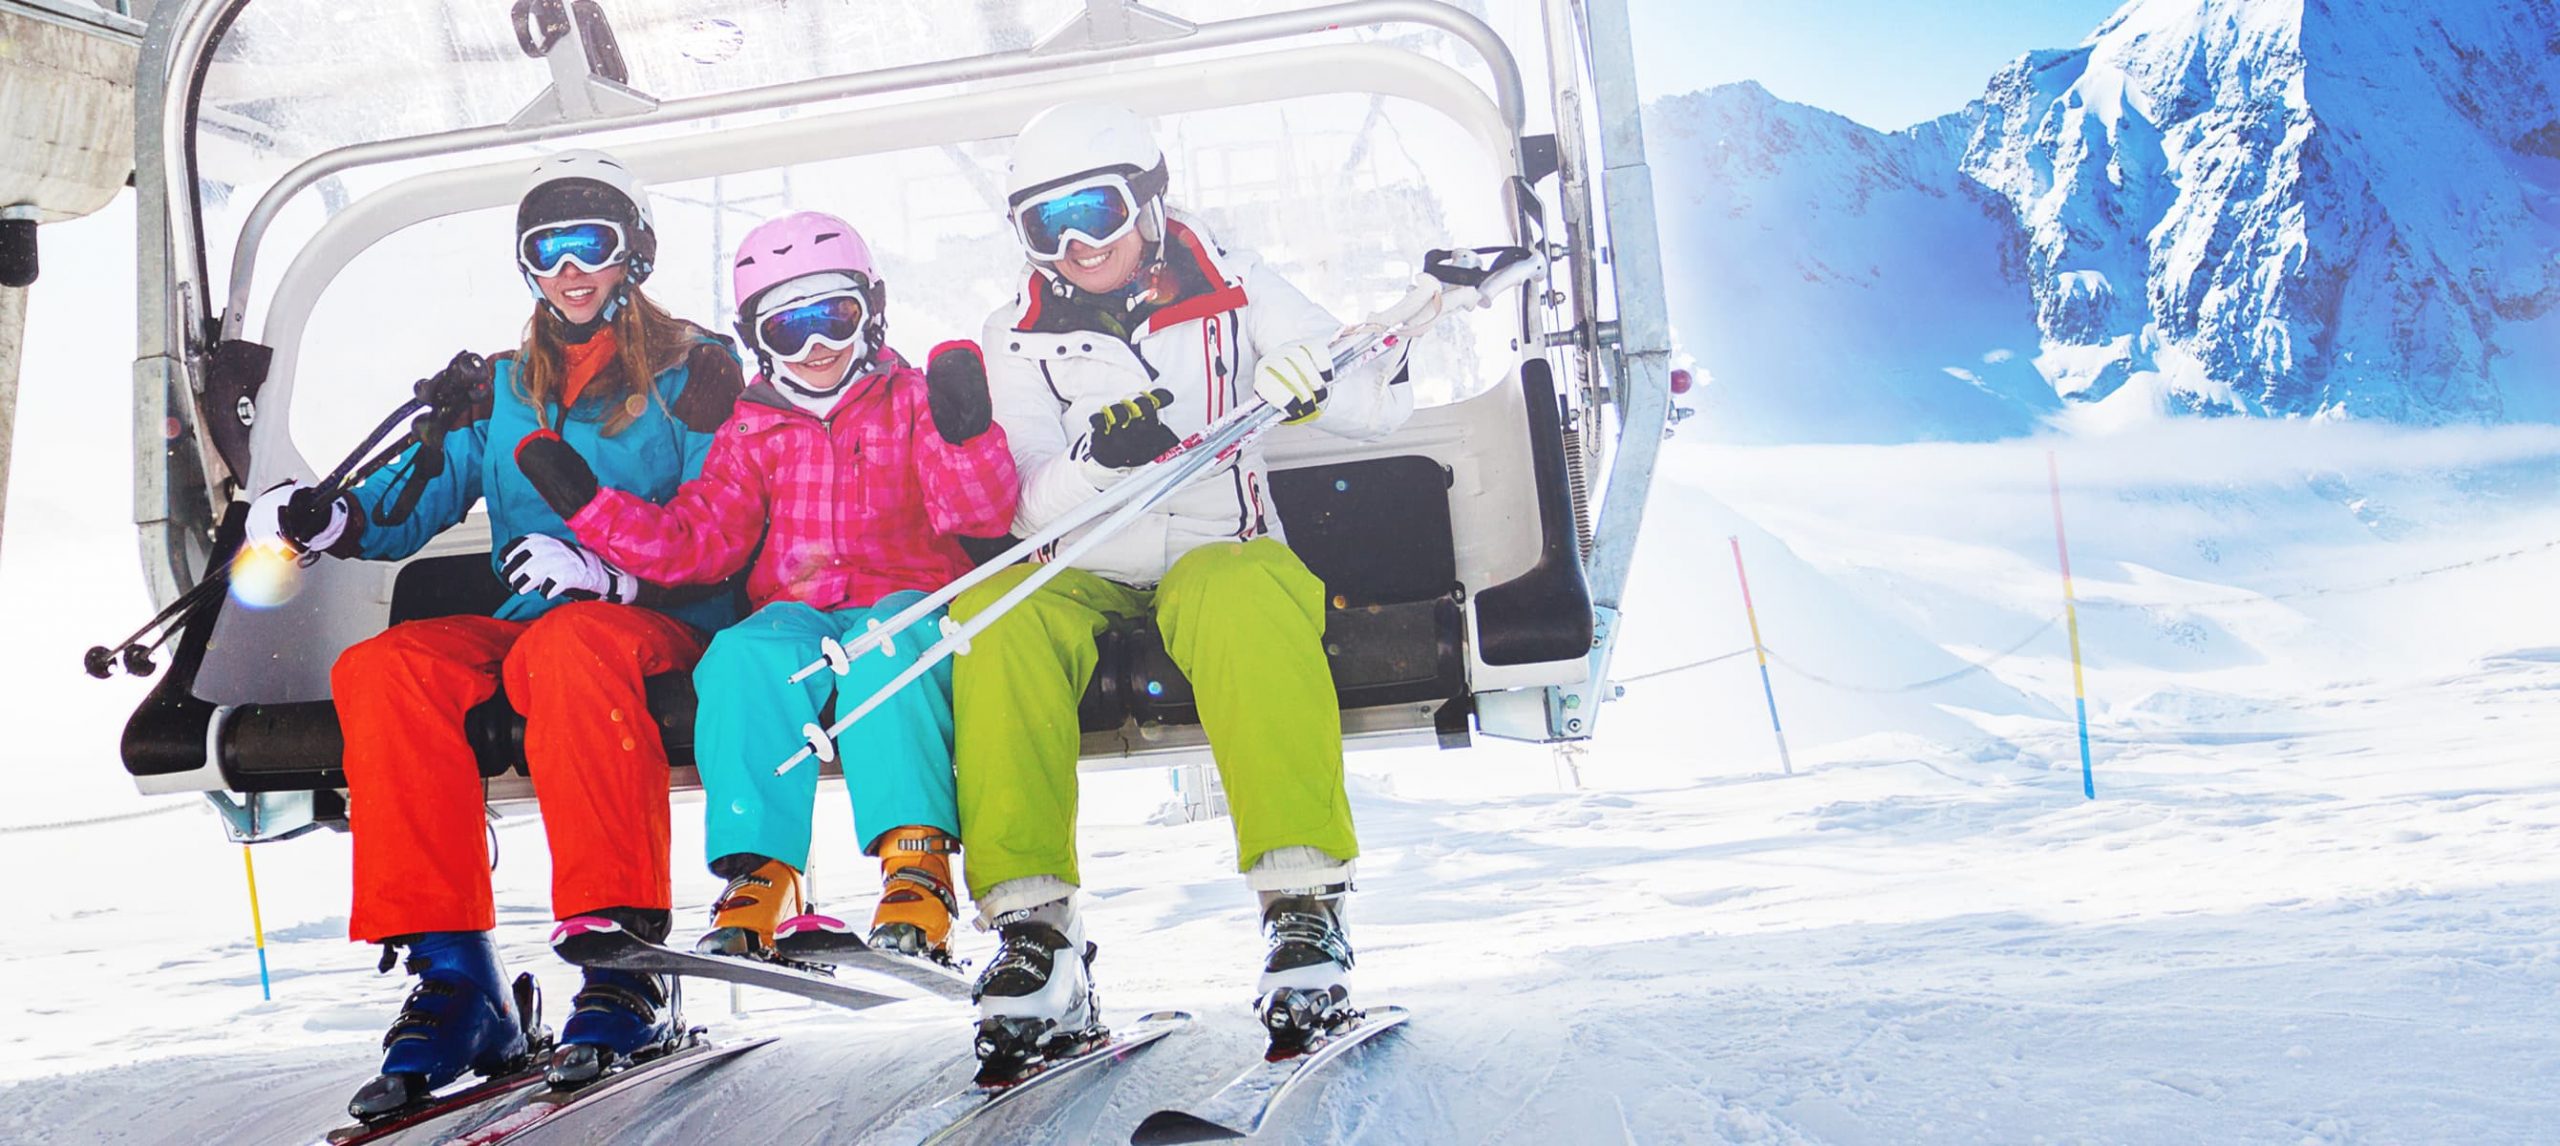 Three people on a ski lift in a snowy ski resort.